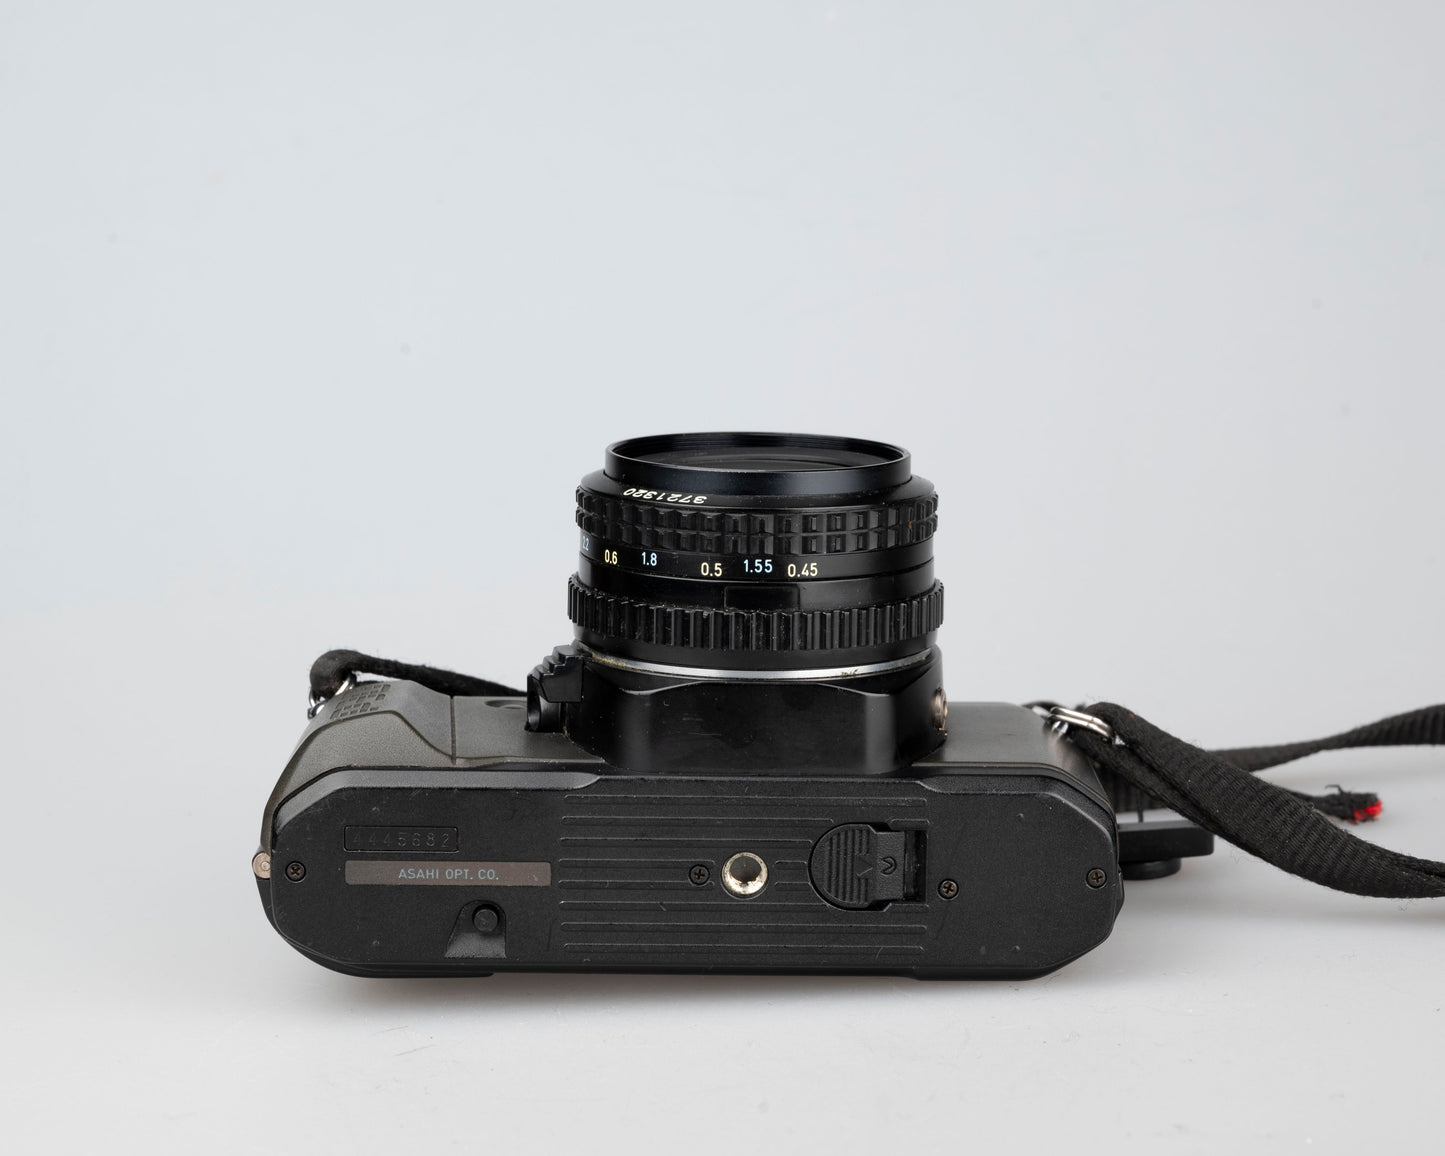 Pentax P30N 35mm film SLR (serial 4445682)